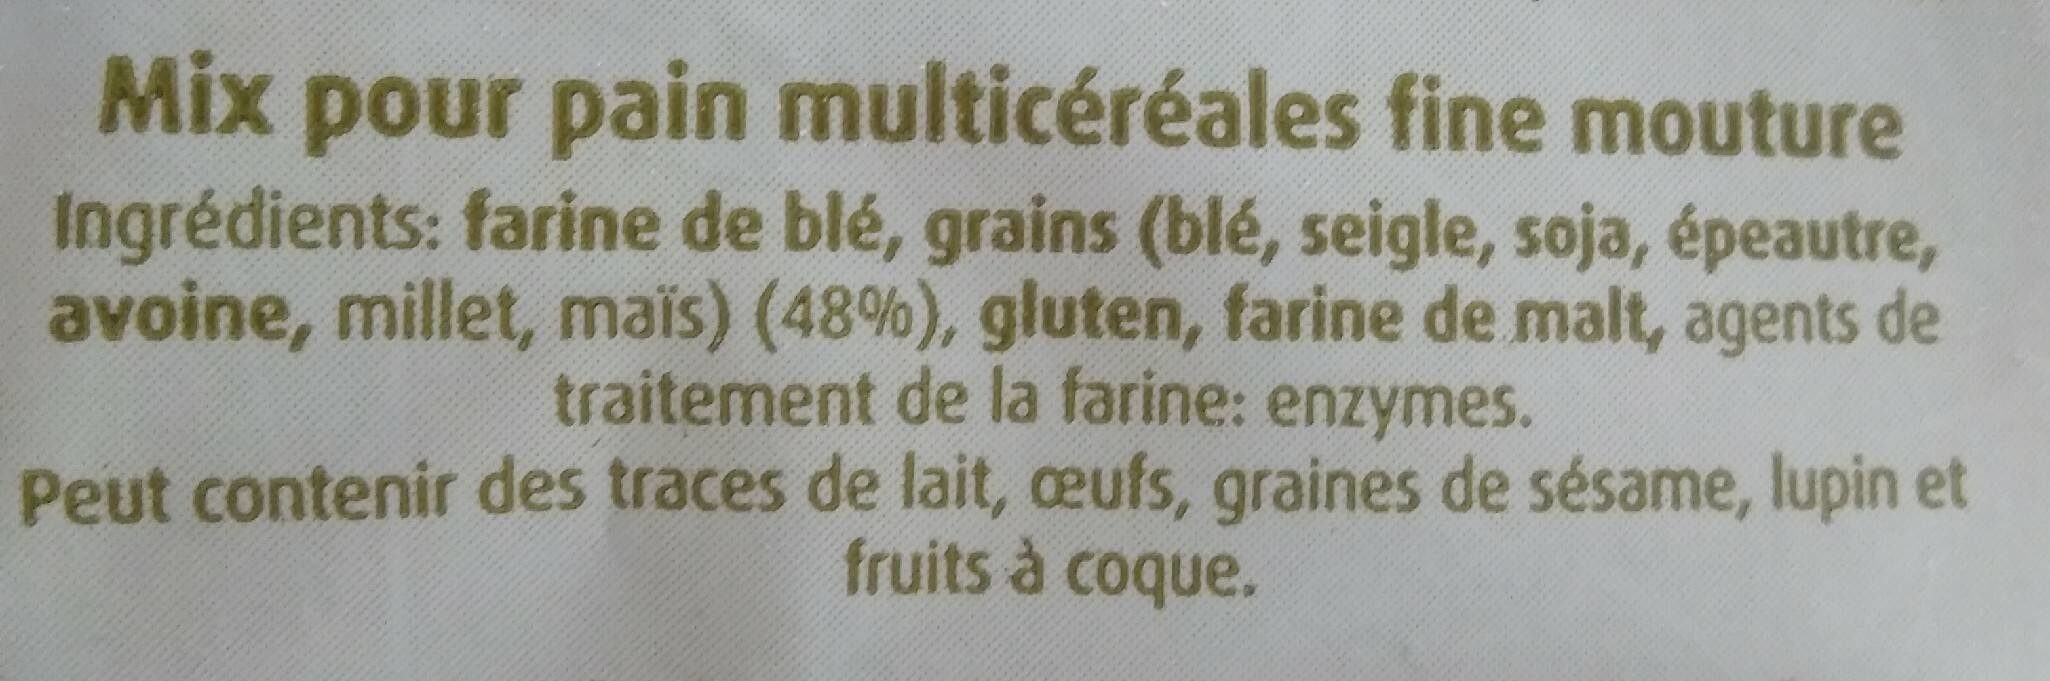 Farine mix pour pain multicéréales - Ingrédients